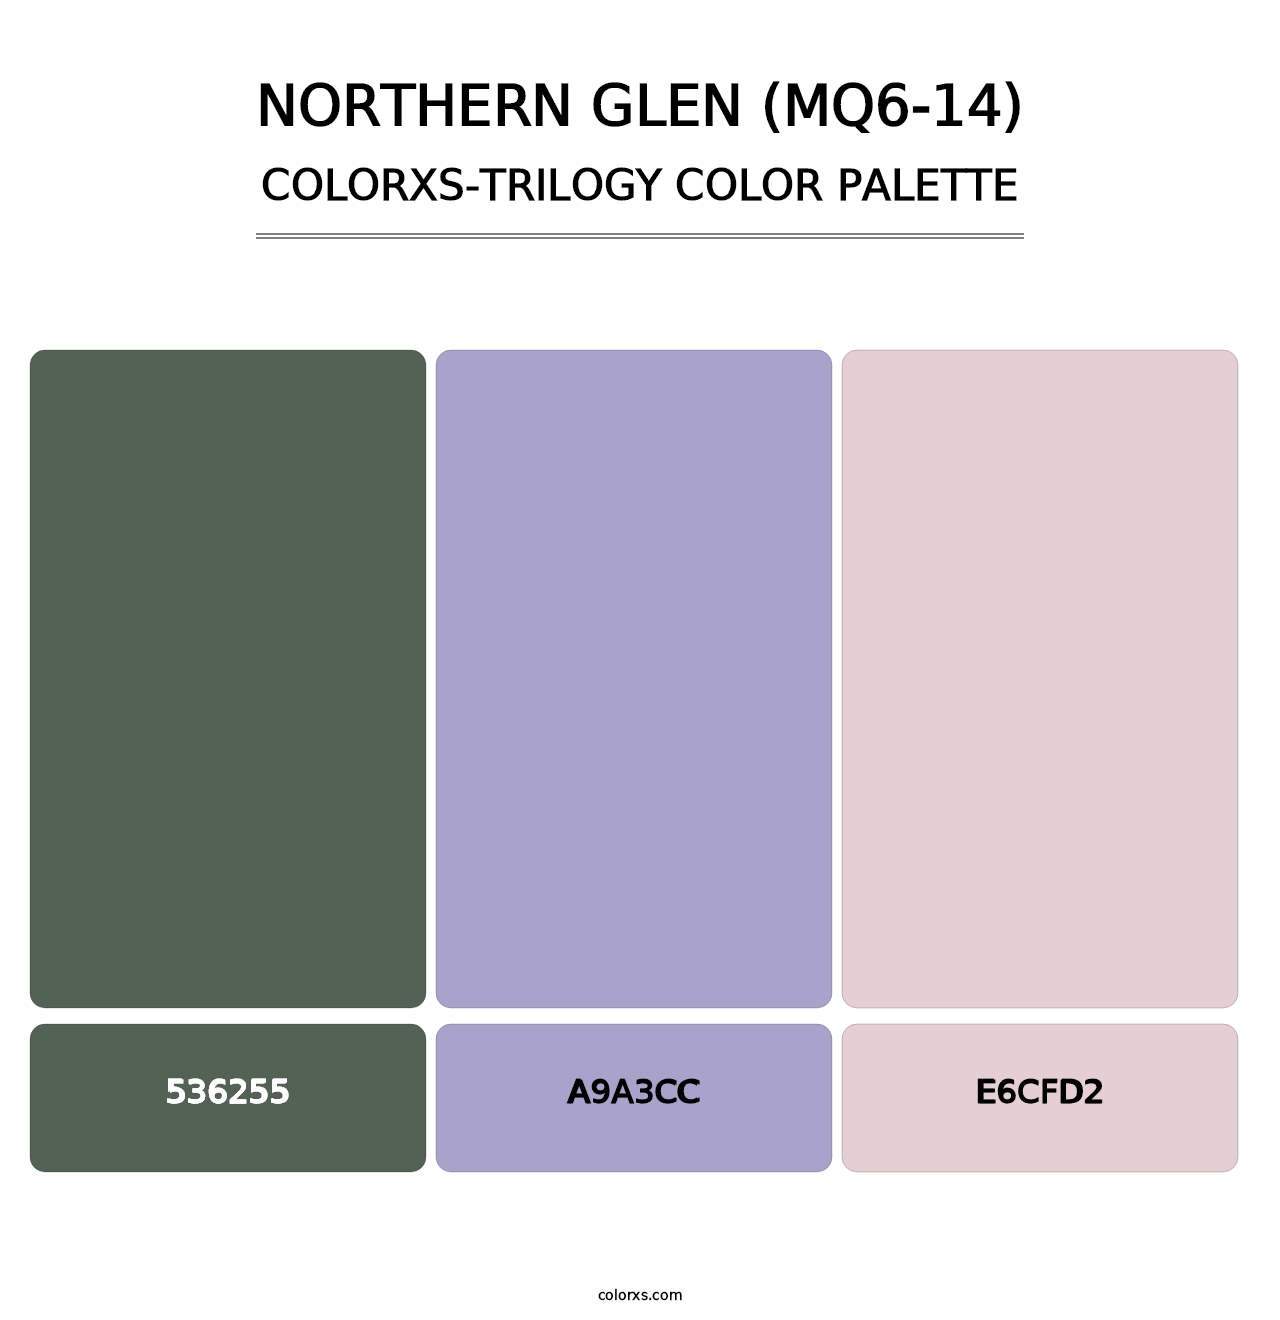 Northern Glen (MQ6-14) - Colorxs Trilogy Palette